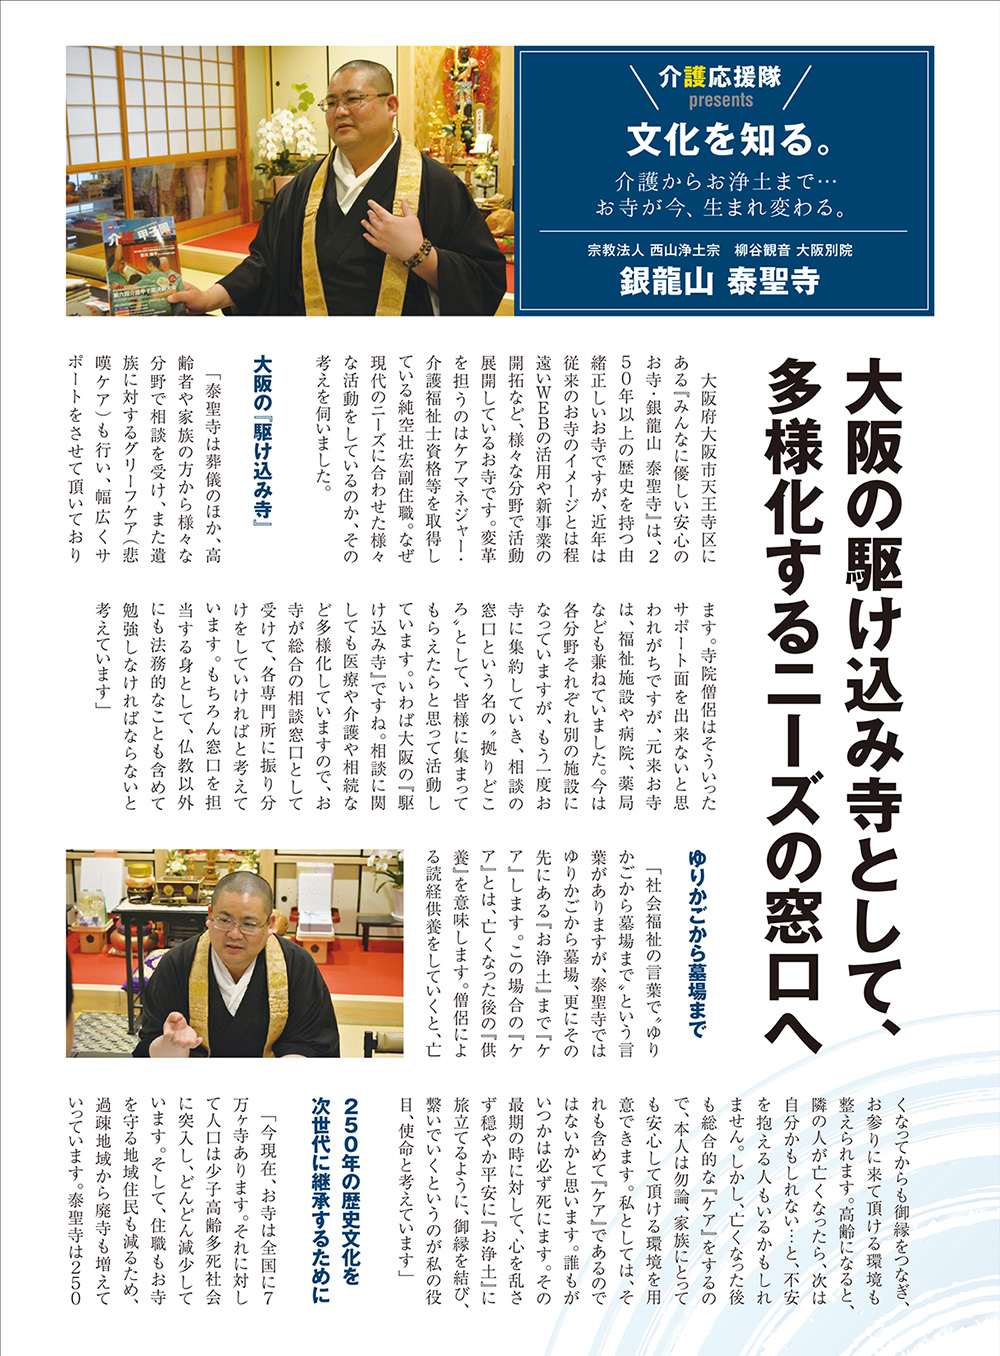 日本介護協会が発行する『介護応援隊』に泰聖寺の記事が掲載されています。1